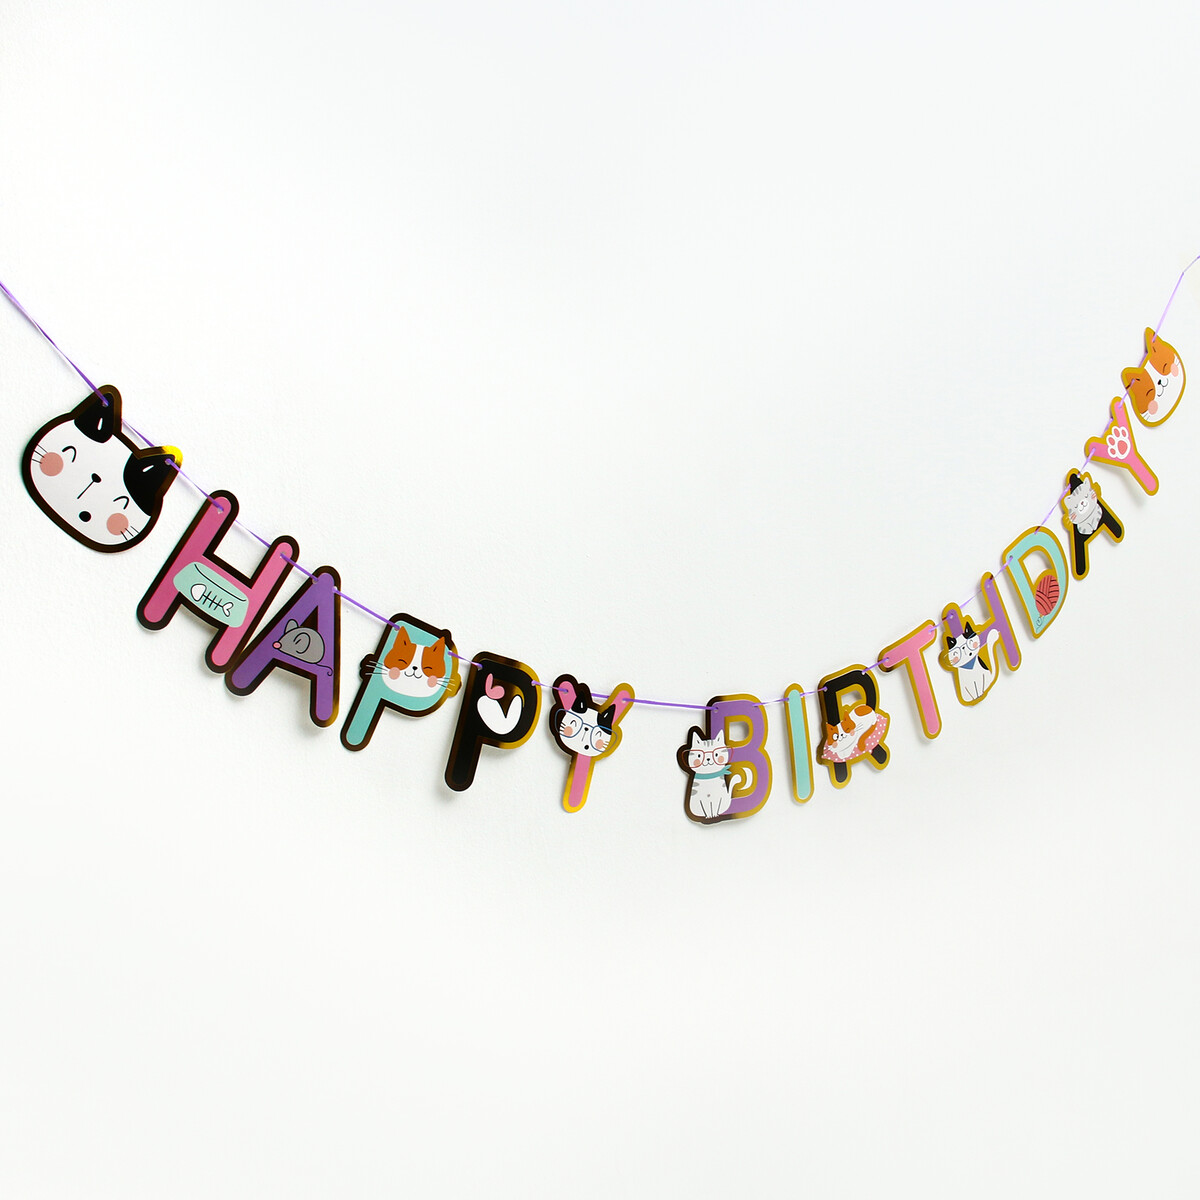 Гирлянда happy birthday, длина 2 метра светодиодная лента для воздушного шара гирлянда 3 метра 31 диод ная